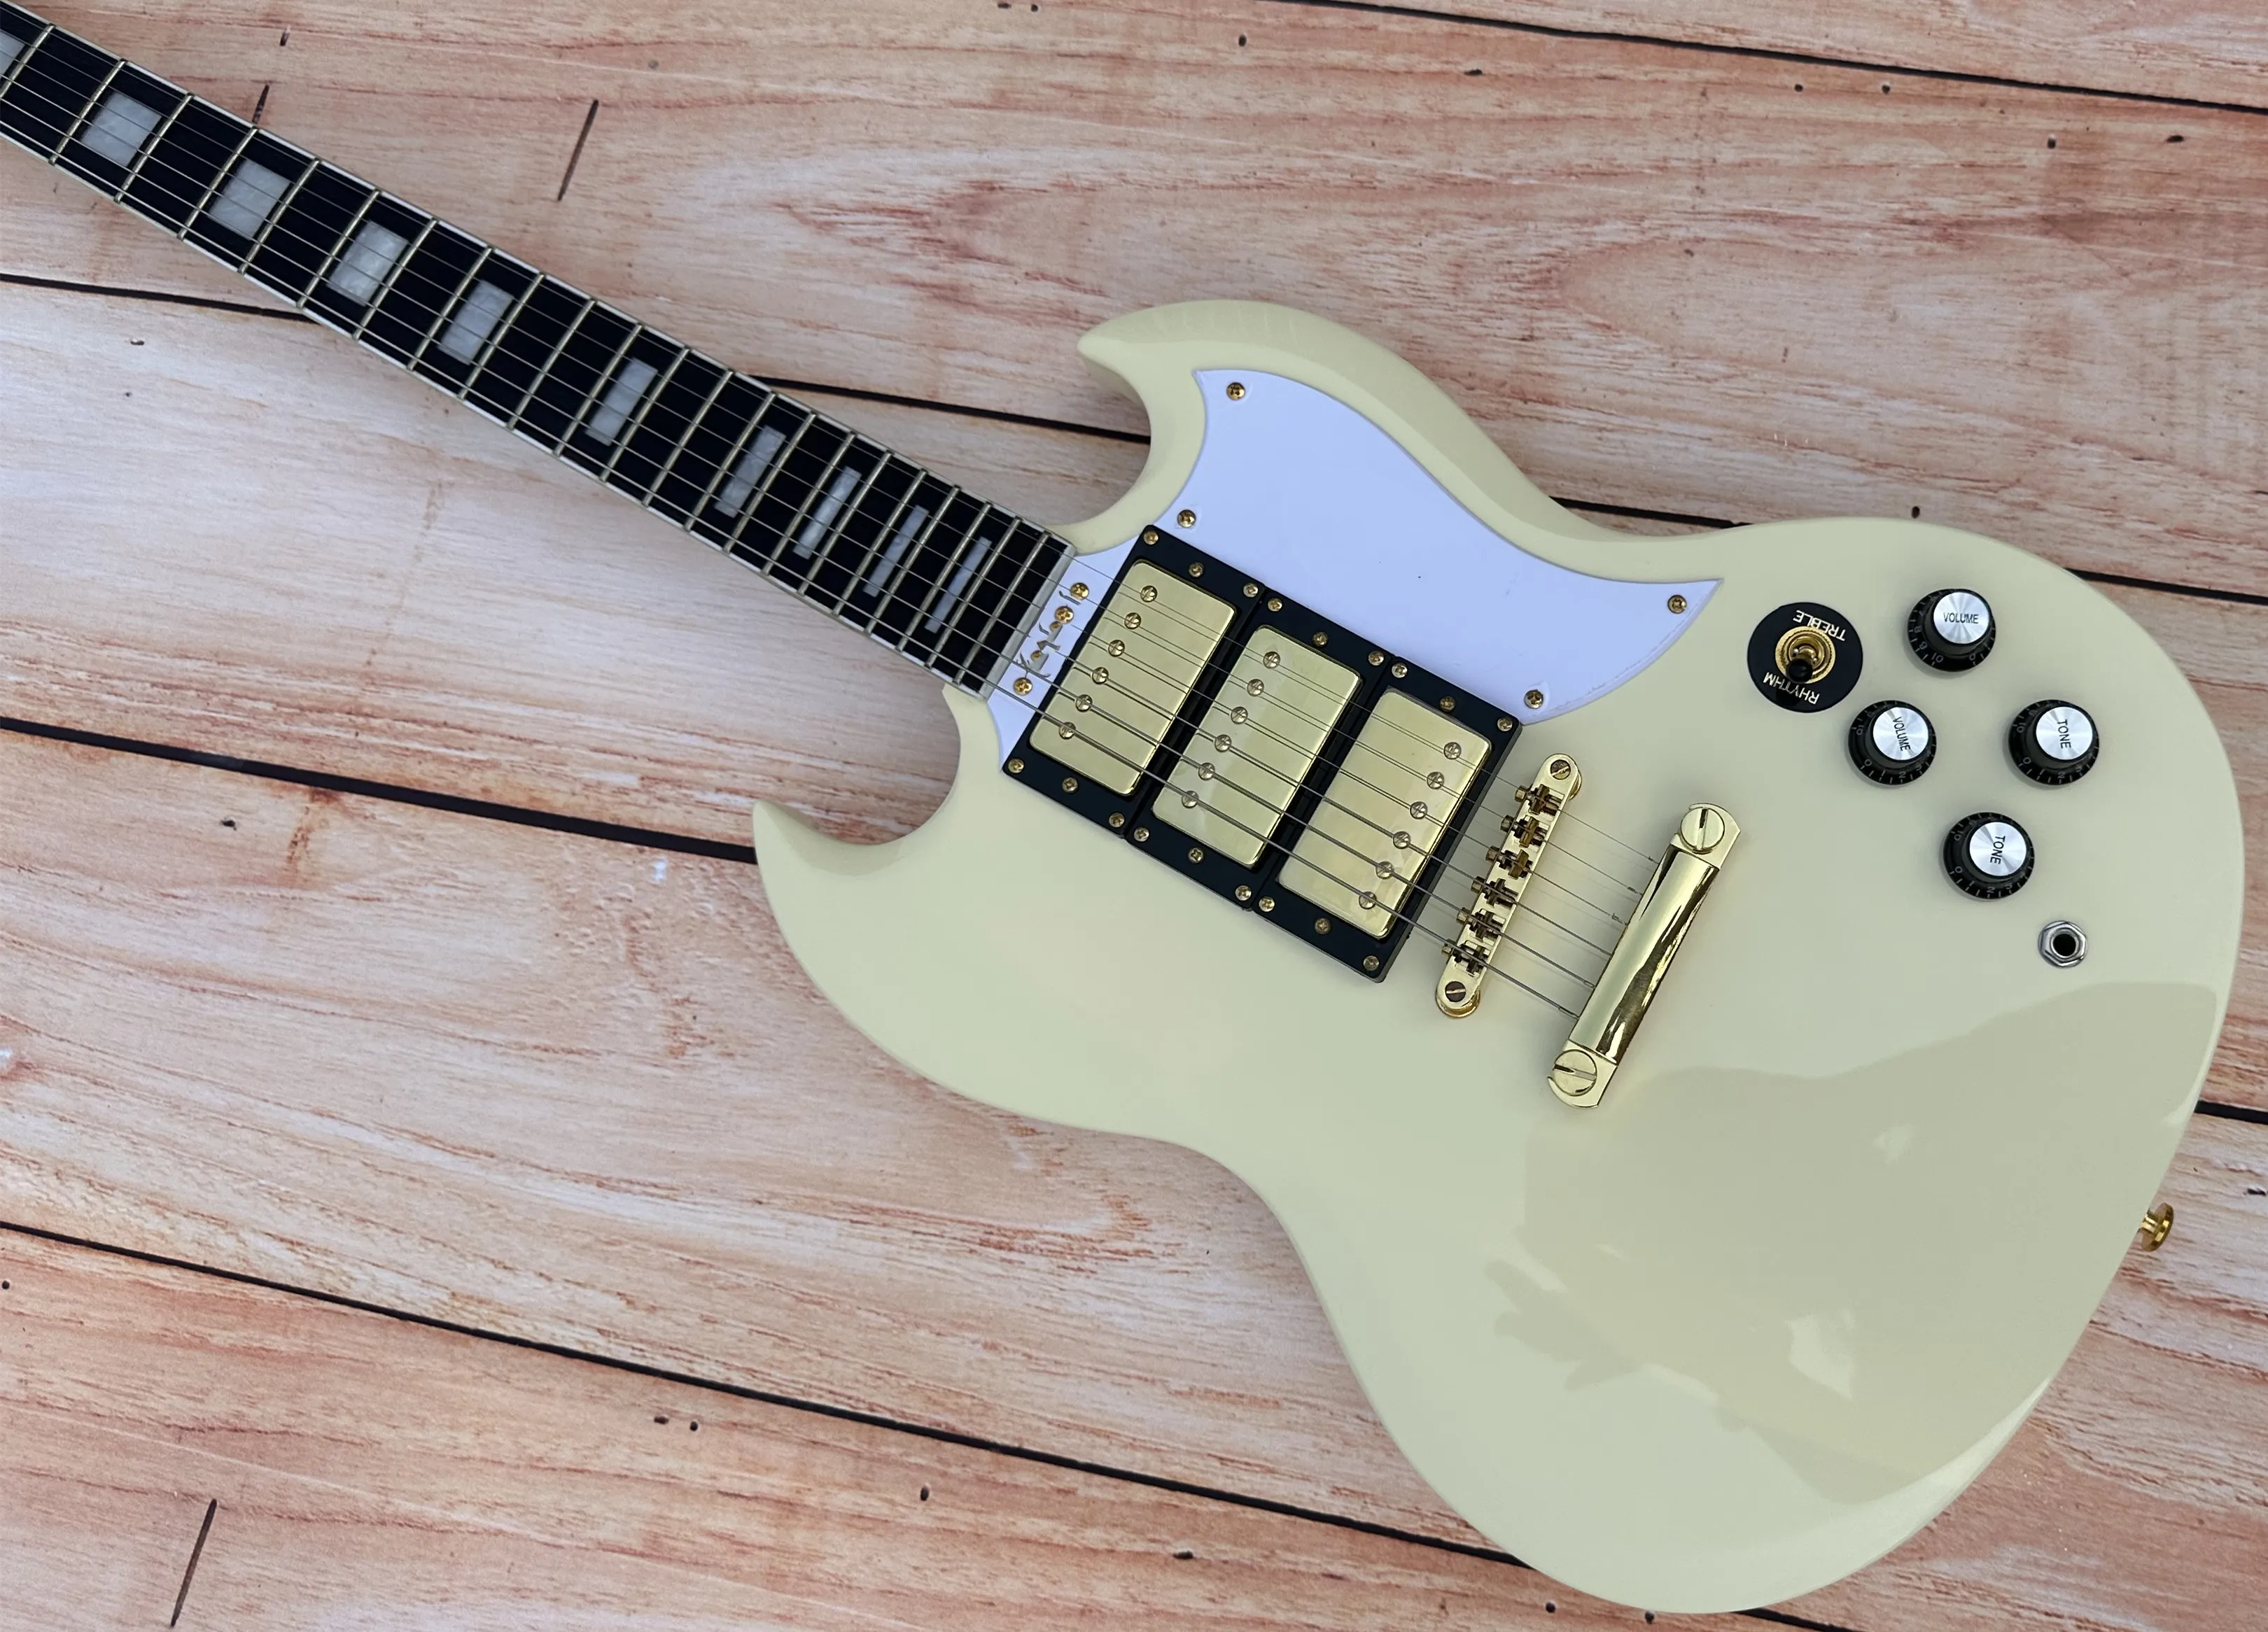 

Индивидуальная электрическая гитара, электрогитара SG, кремово-белая, блестящая, золотые аксессуары, в наличии, быстрая доставка